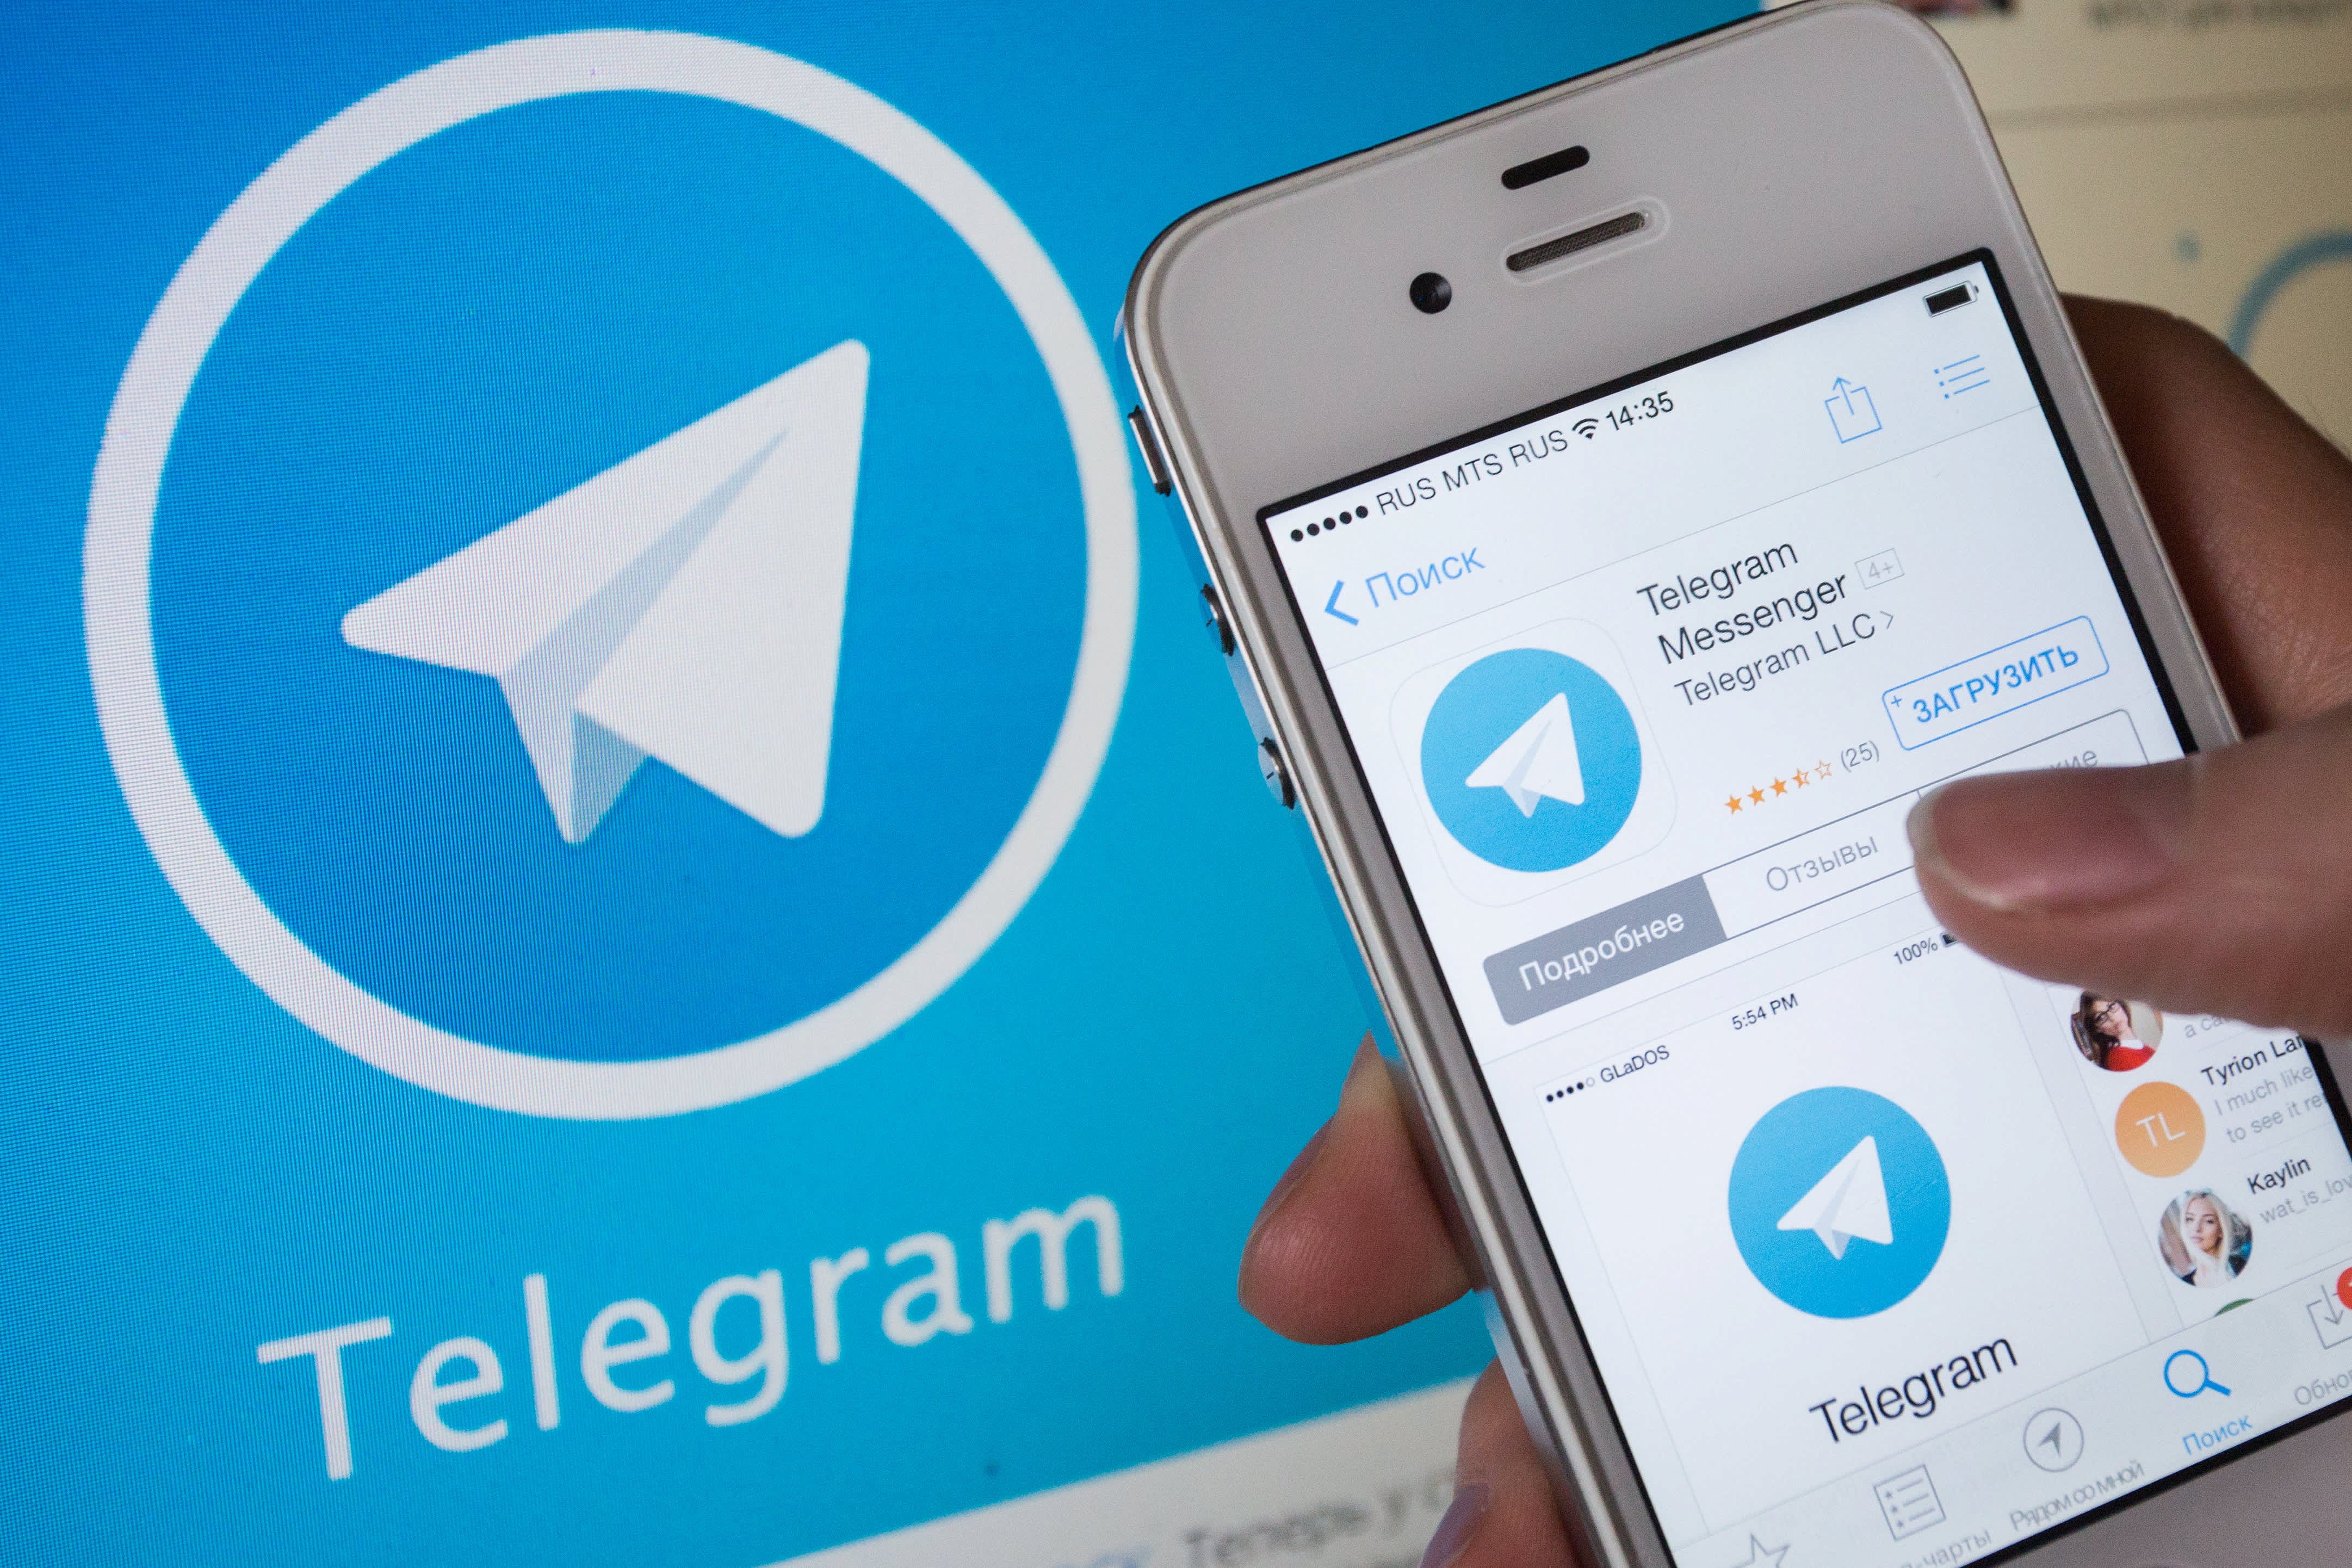 Telegram pictures. Телеграмм. Терлег. Телеграм приложение. Telegram мессенджер.